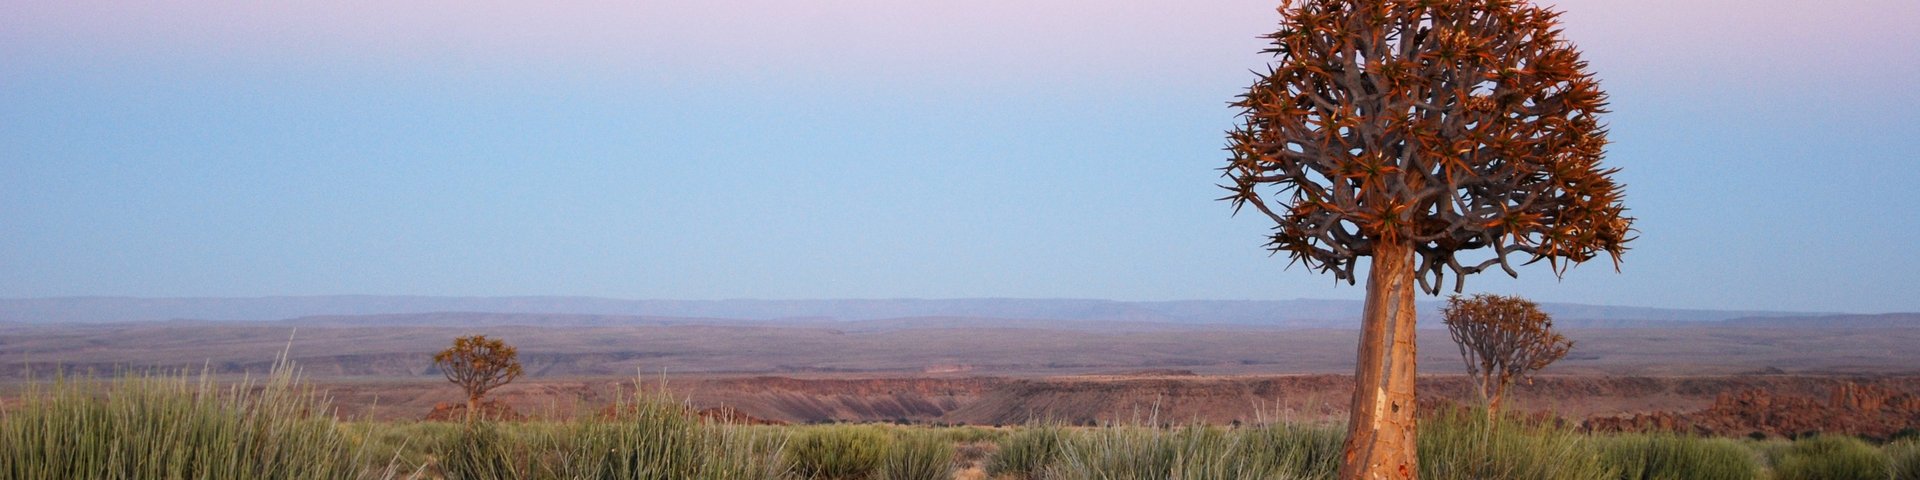 Namibia, Afrika